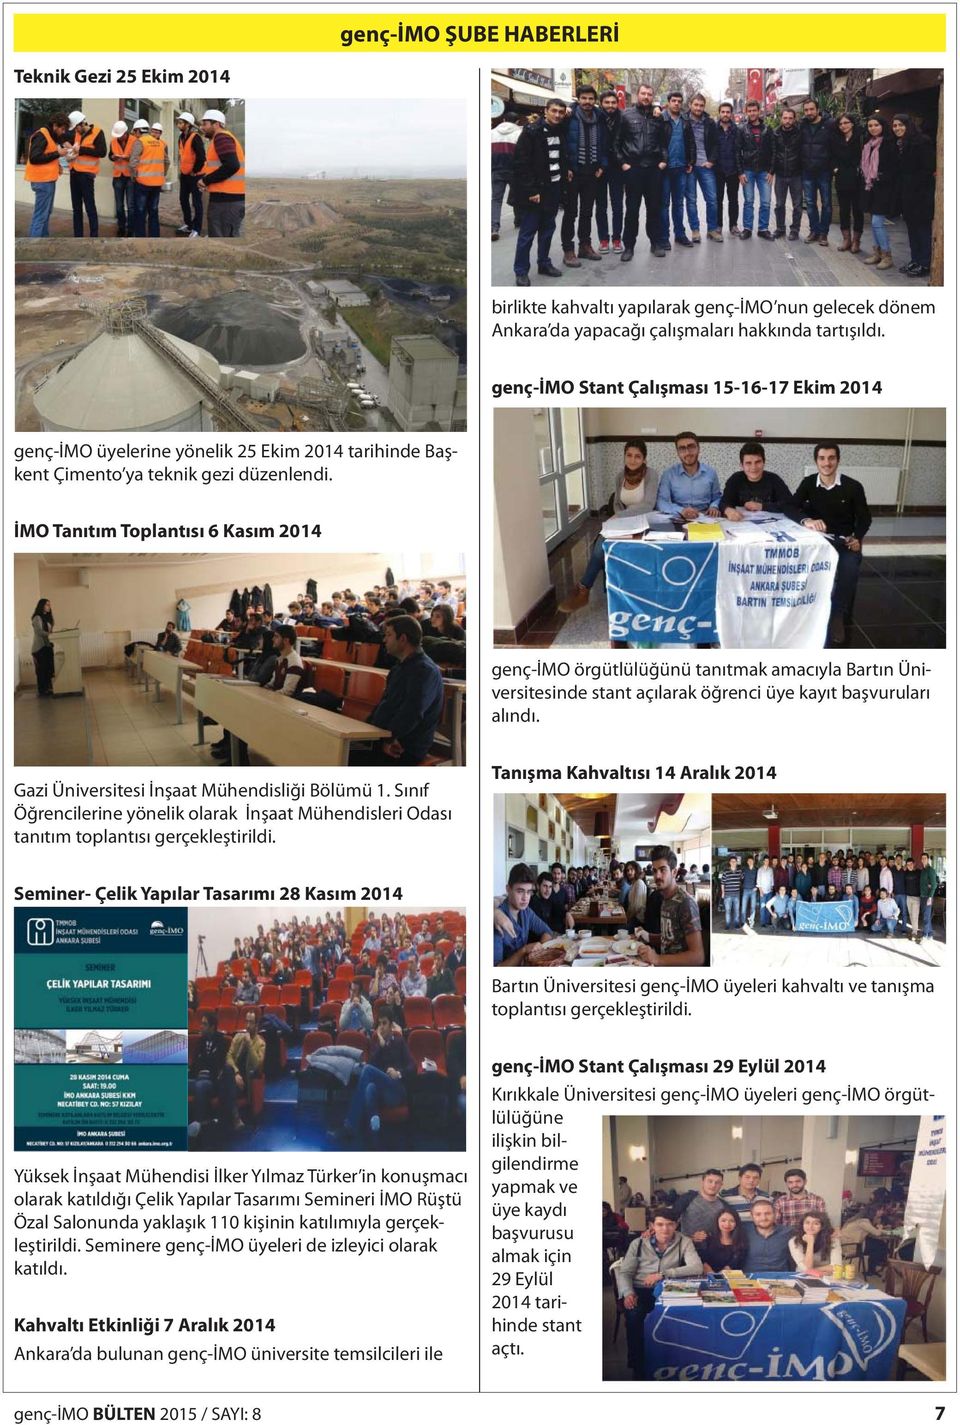 İMO Tanıtım Toplantısı 6 Kasım 2014 genç-imo örgütlülüğünü tanıtmak amacıyla Bartın Üniversitesinde stant açılarak öğrenci üye kayıt başvuruları alındı. Gazi Üniversitesi İnşaat Mühendisliği Bölümü 1.